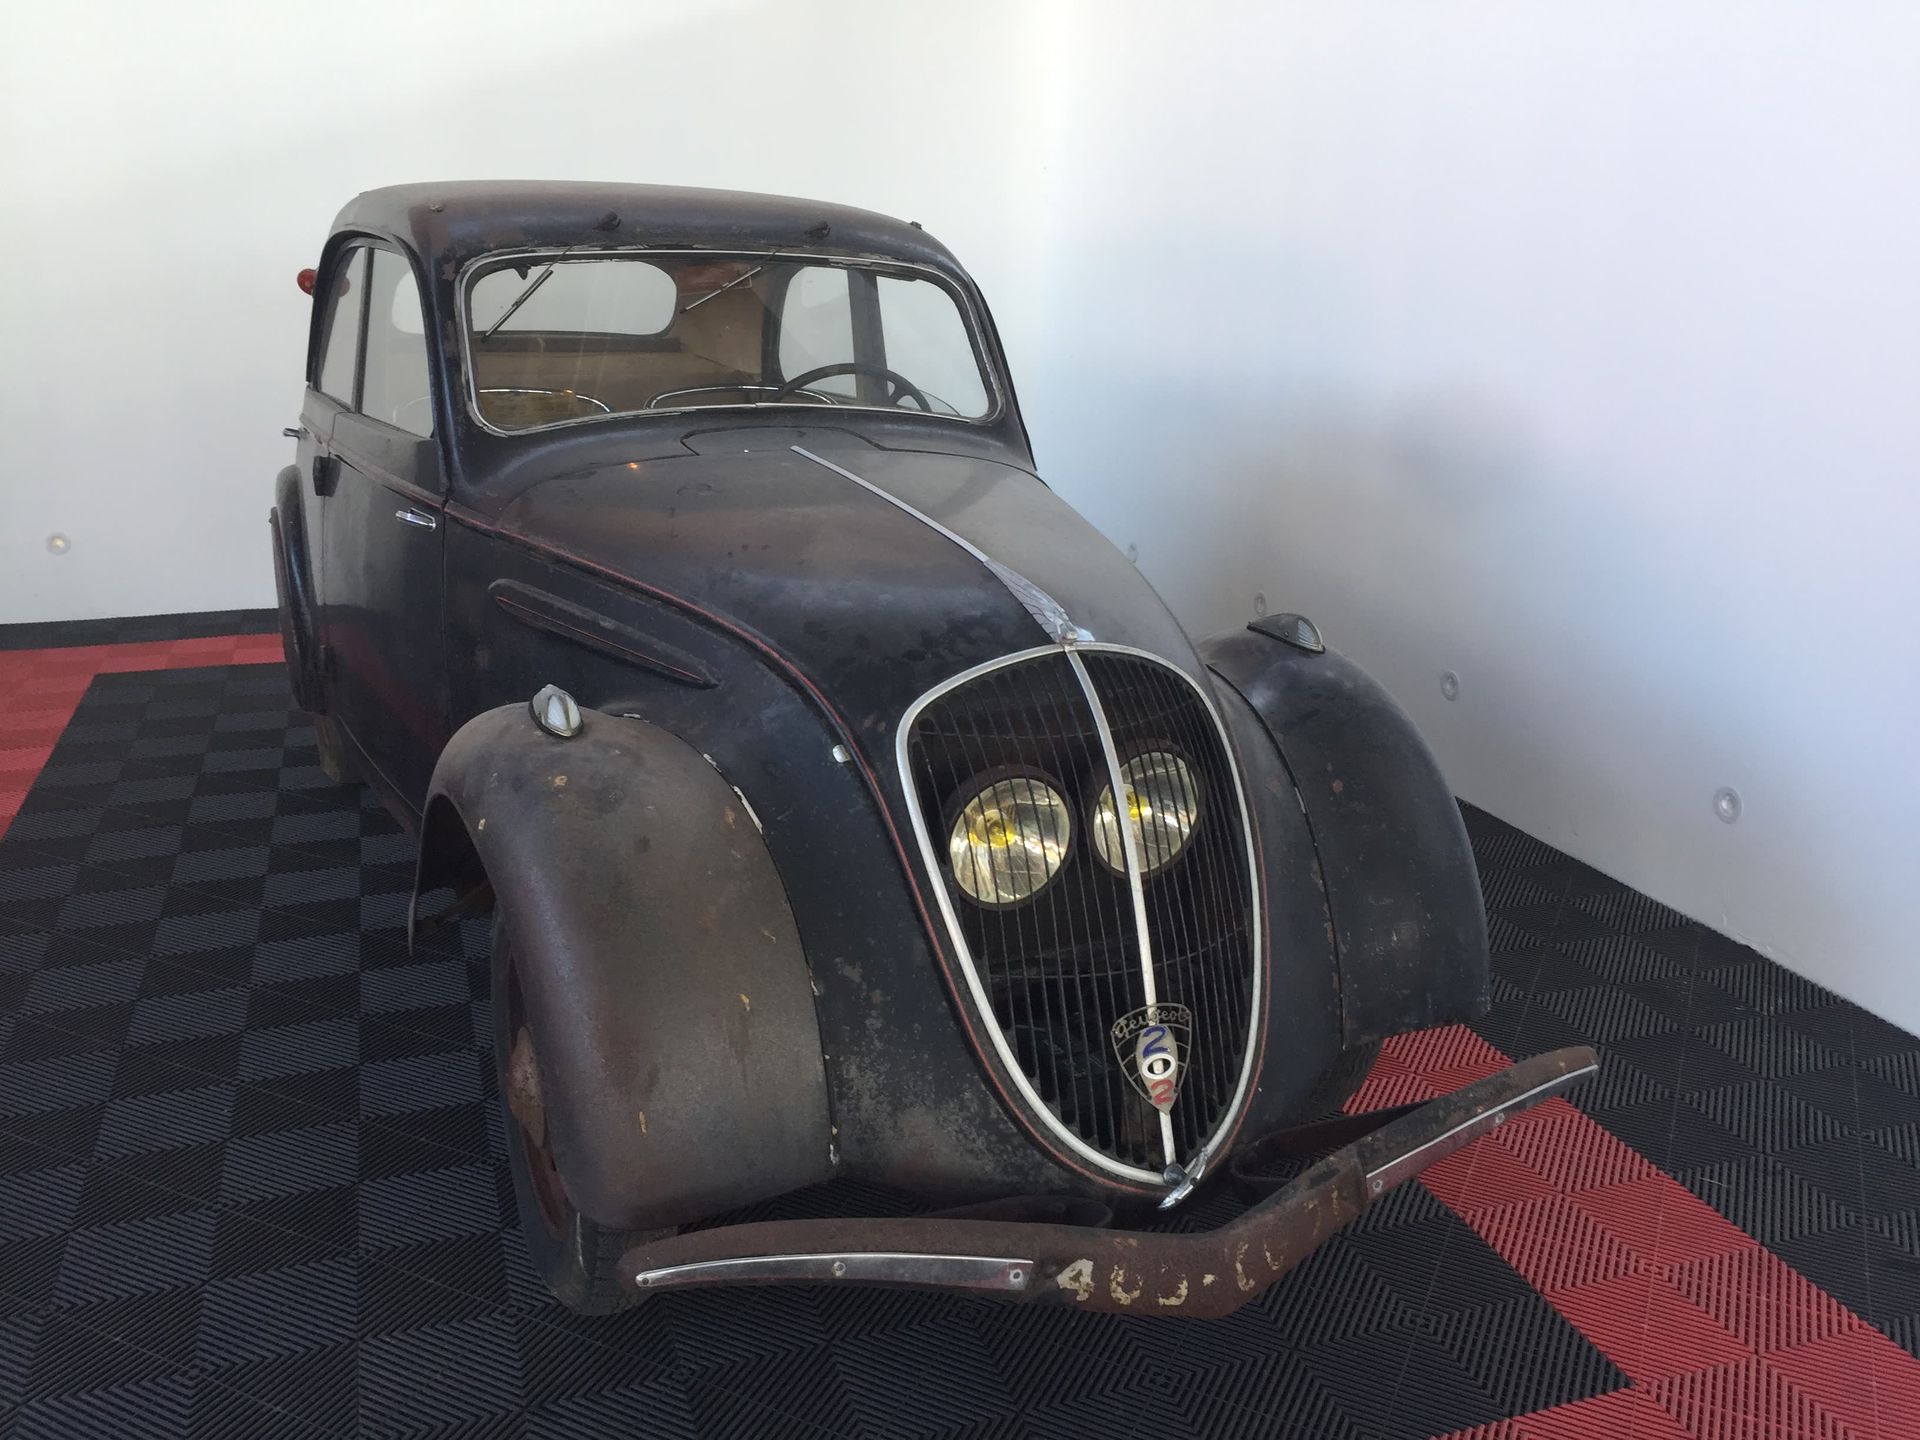 1938 Peugeot 202 53153 km

Französischer Fahrzeugschein 

Seriennummer: 438231

&hellip;